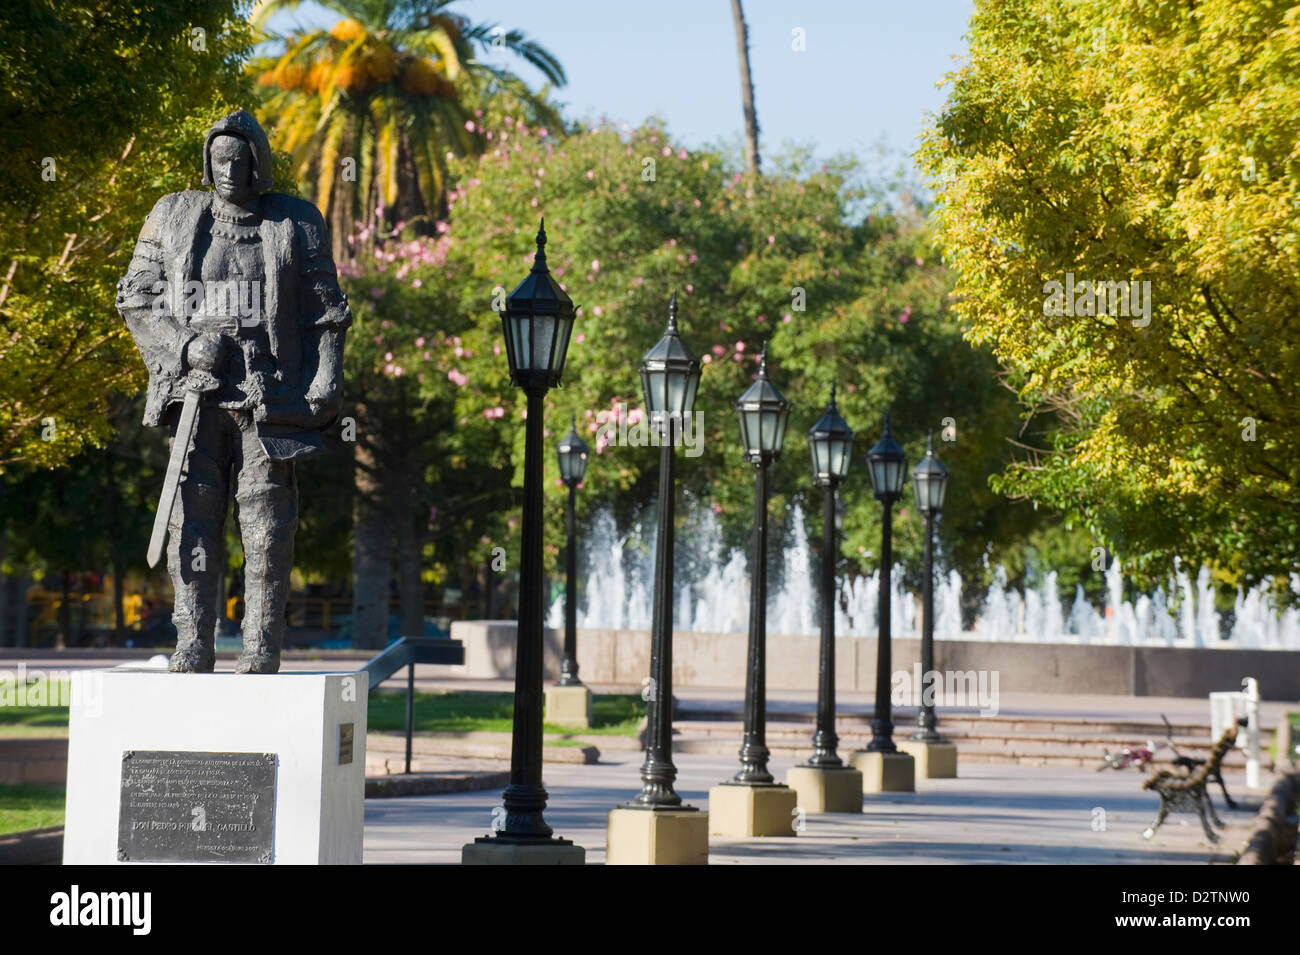 Statue de Don Pedro Ruiz del Castillo, Plaza del Castillo, Mendoza, Argentine, Amérique du Sud Banque D'Images